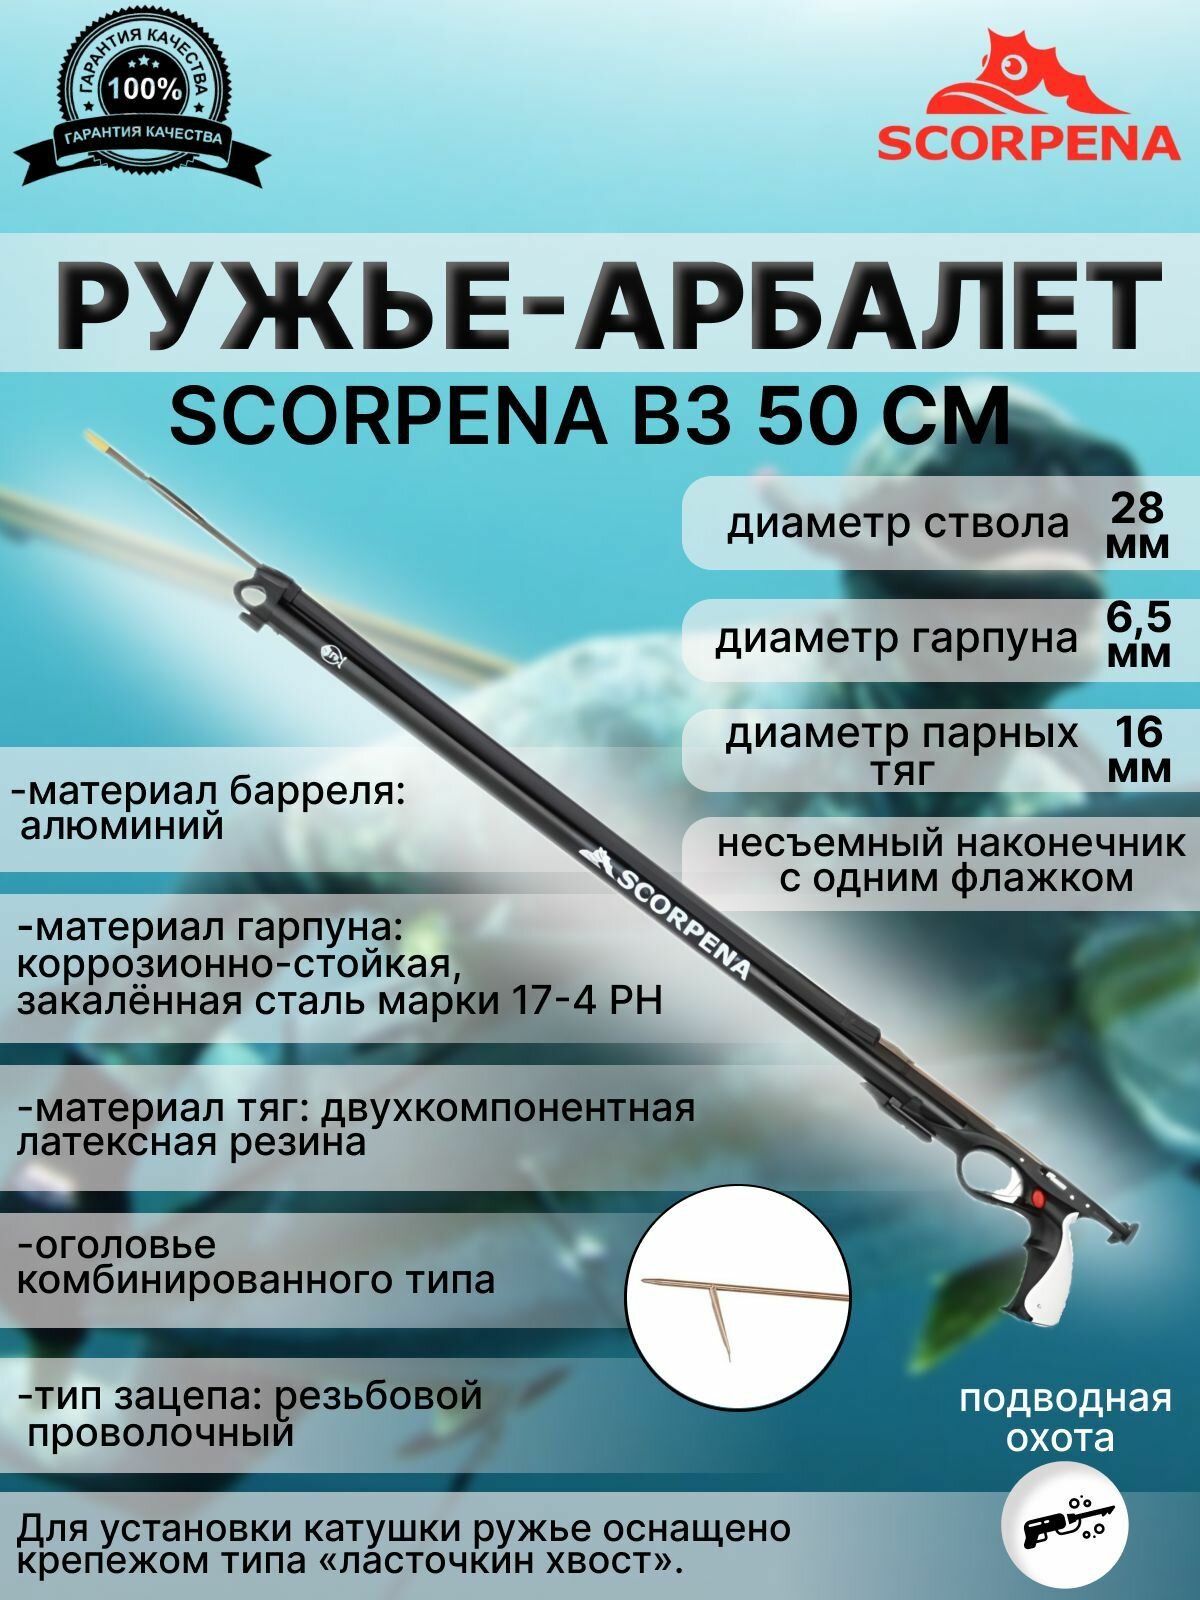 Ружье-арбалет для подводной охоты SCORPENA B3, 50 см